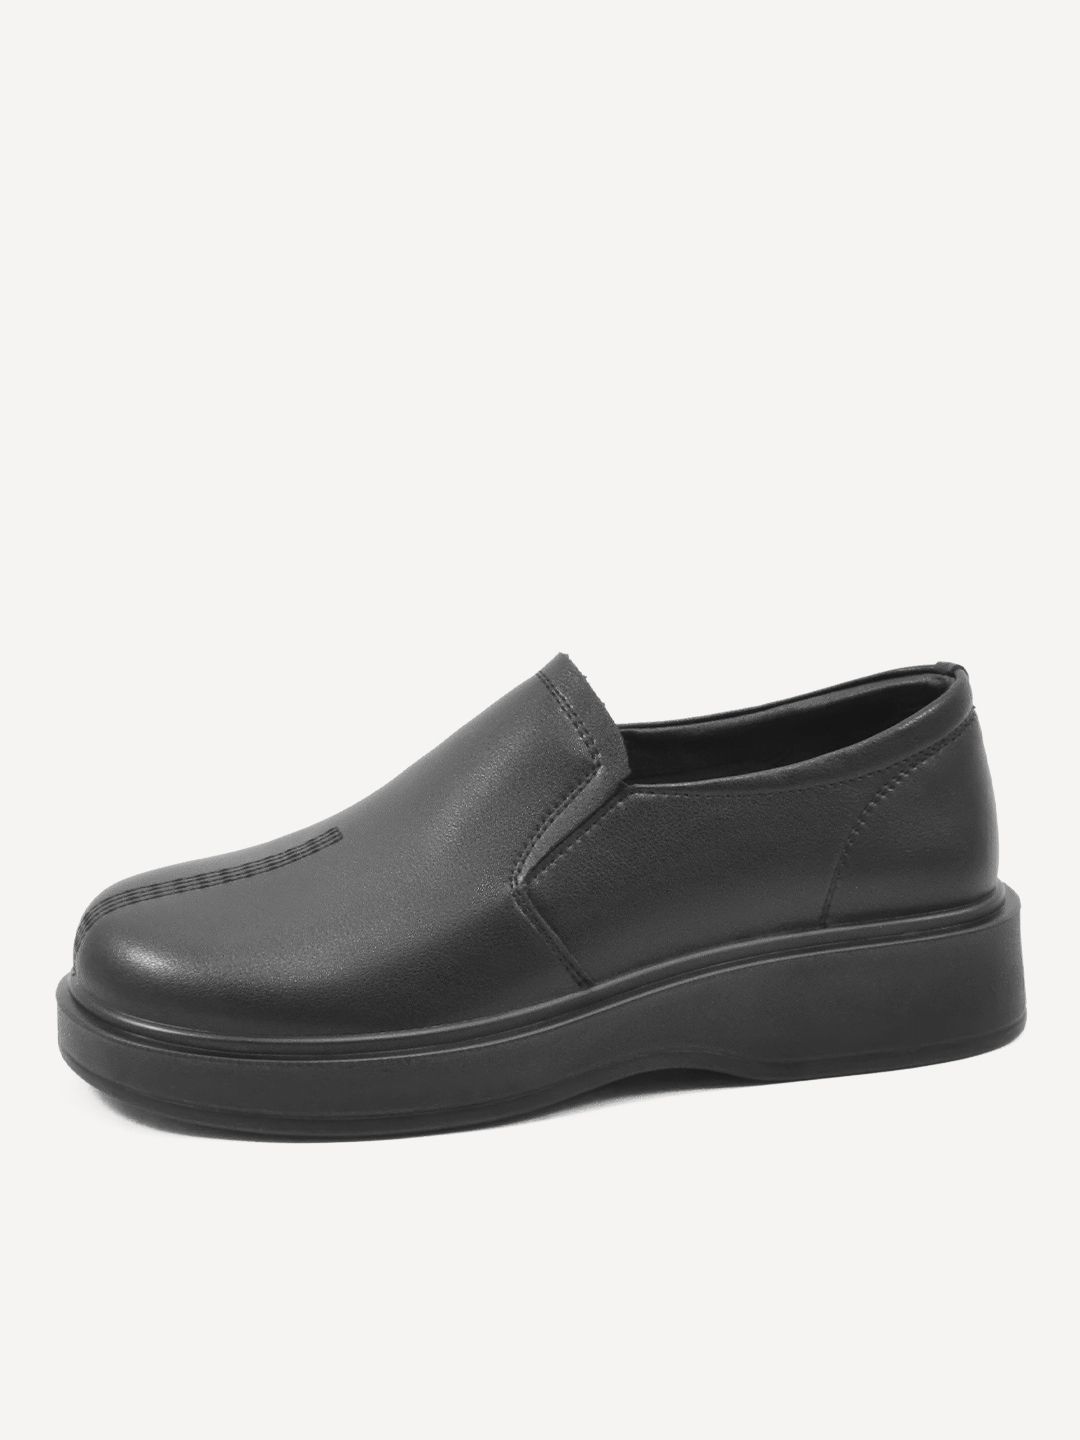 Туфли женские Baden GJ040-020 черные 36 RU